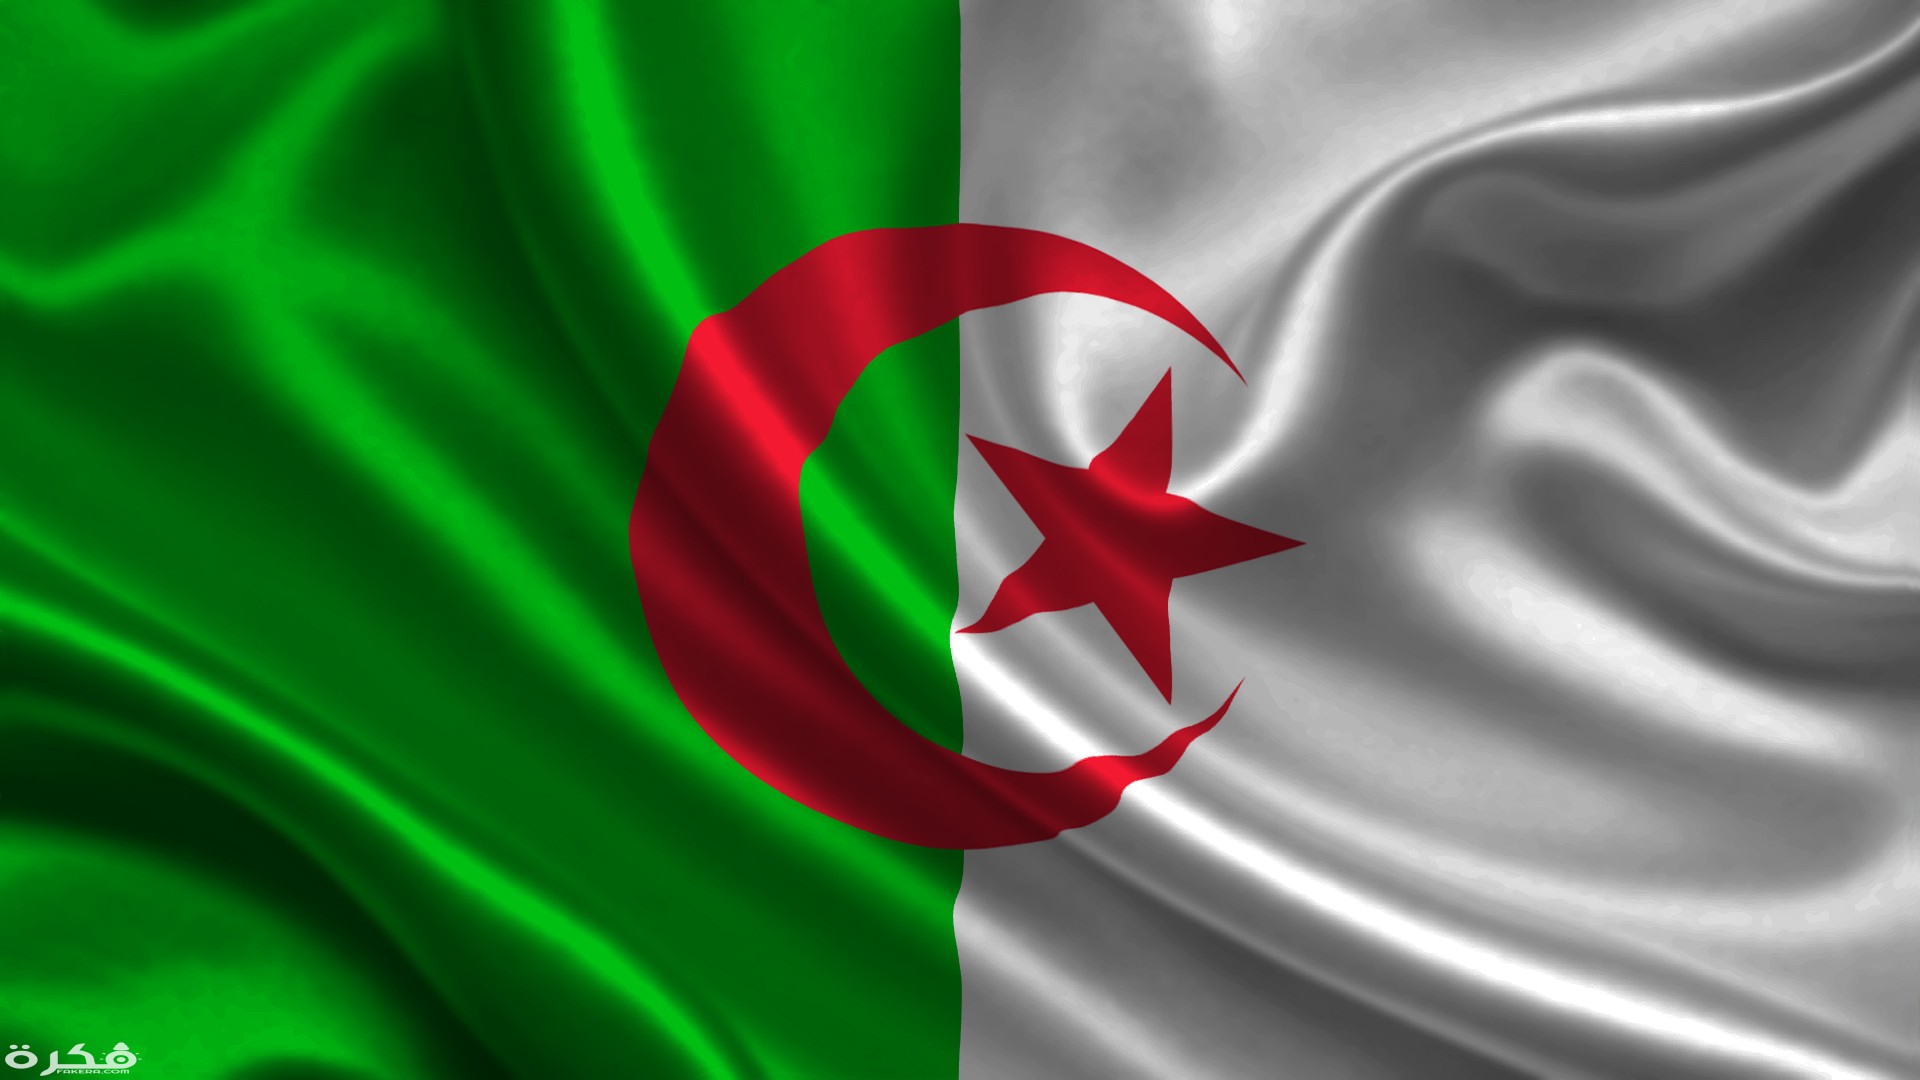 تآمر اسرائيلي مستمر عليها : لماذا الجزائر أقرب الى محور المقاومة؟ 